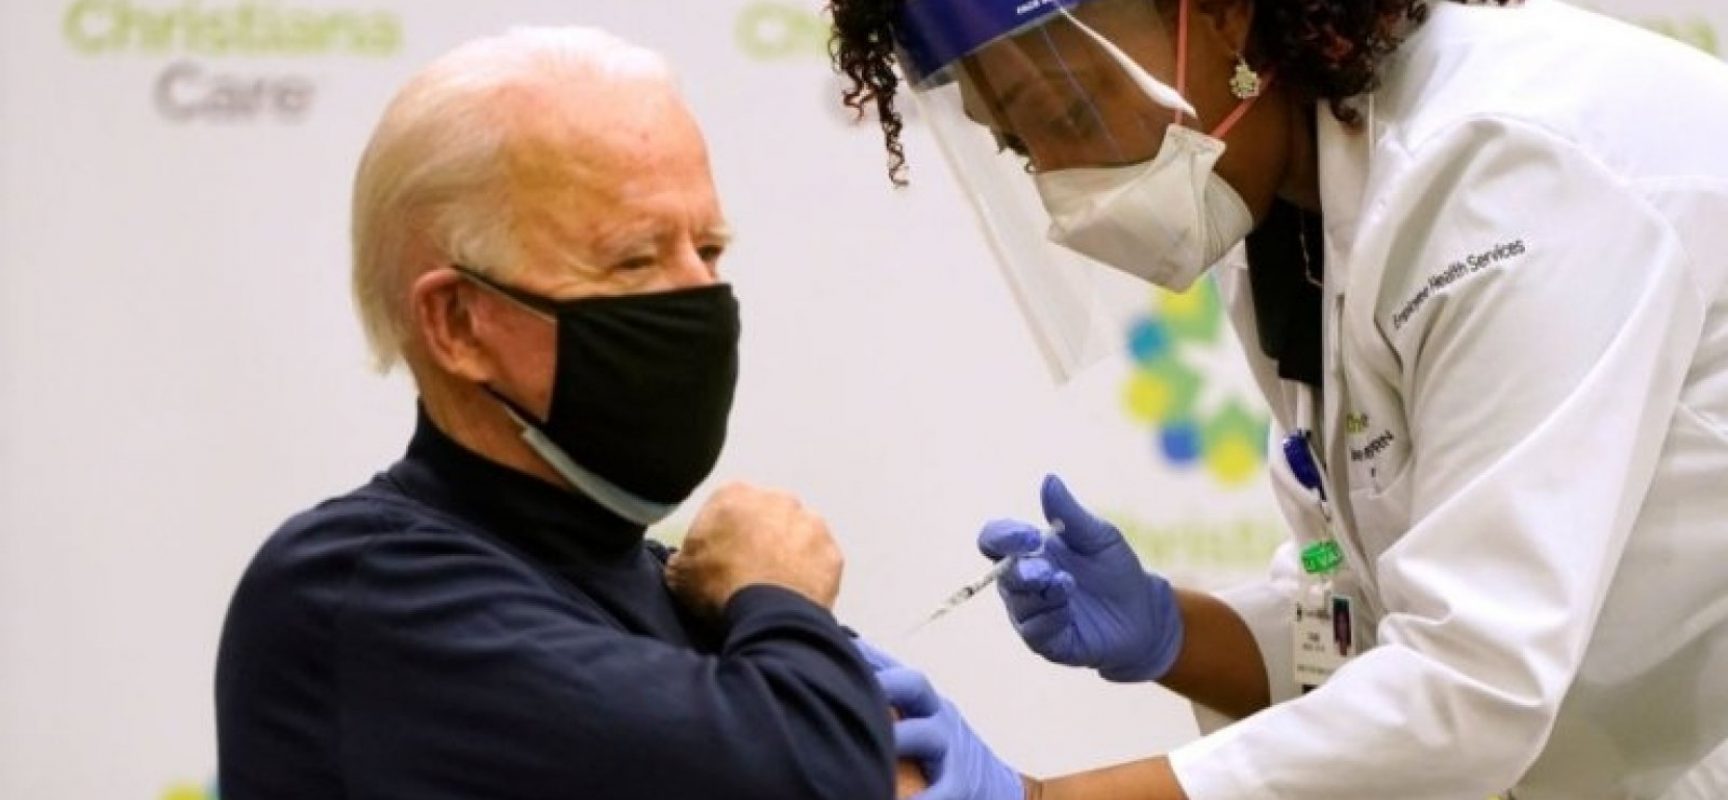 Presidente eleito dos EUA, Joe Biden recebe 1ª dose de vacina contra a Covid-19